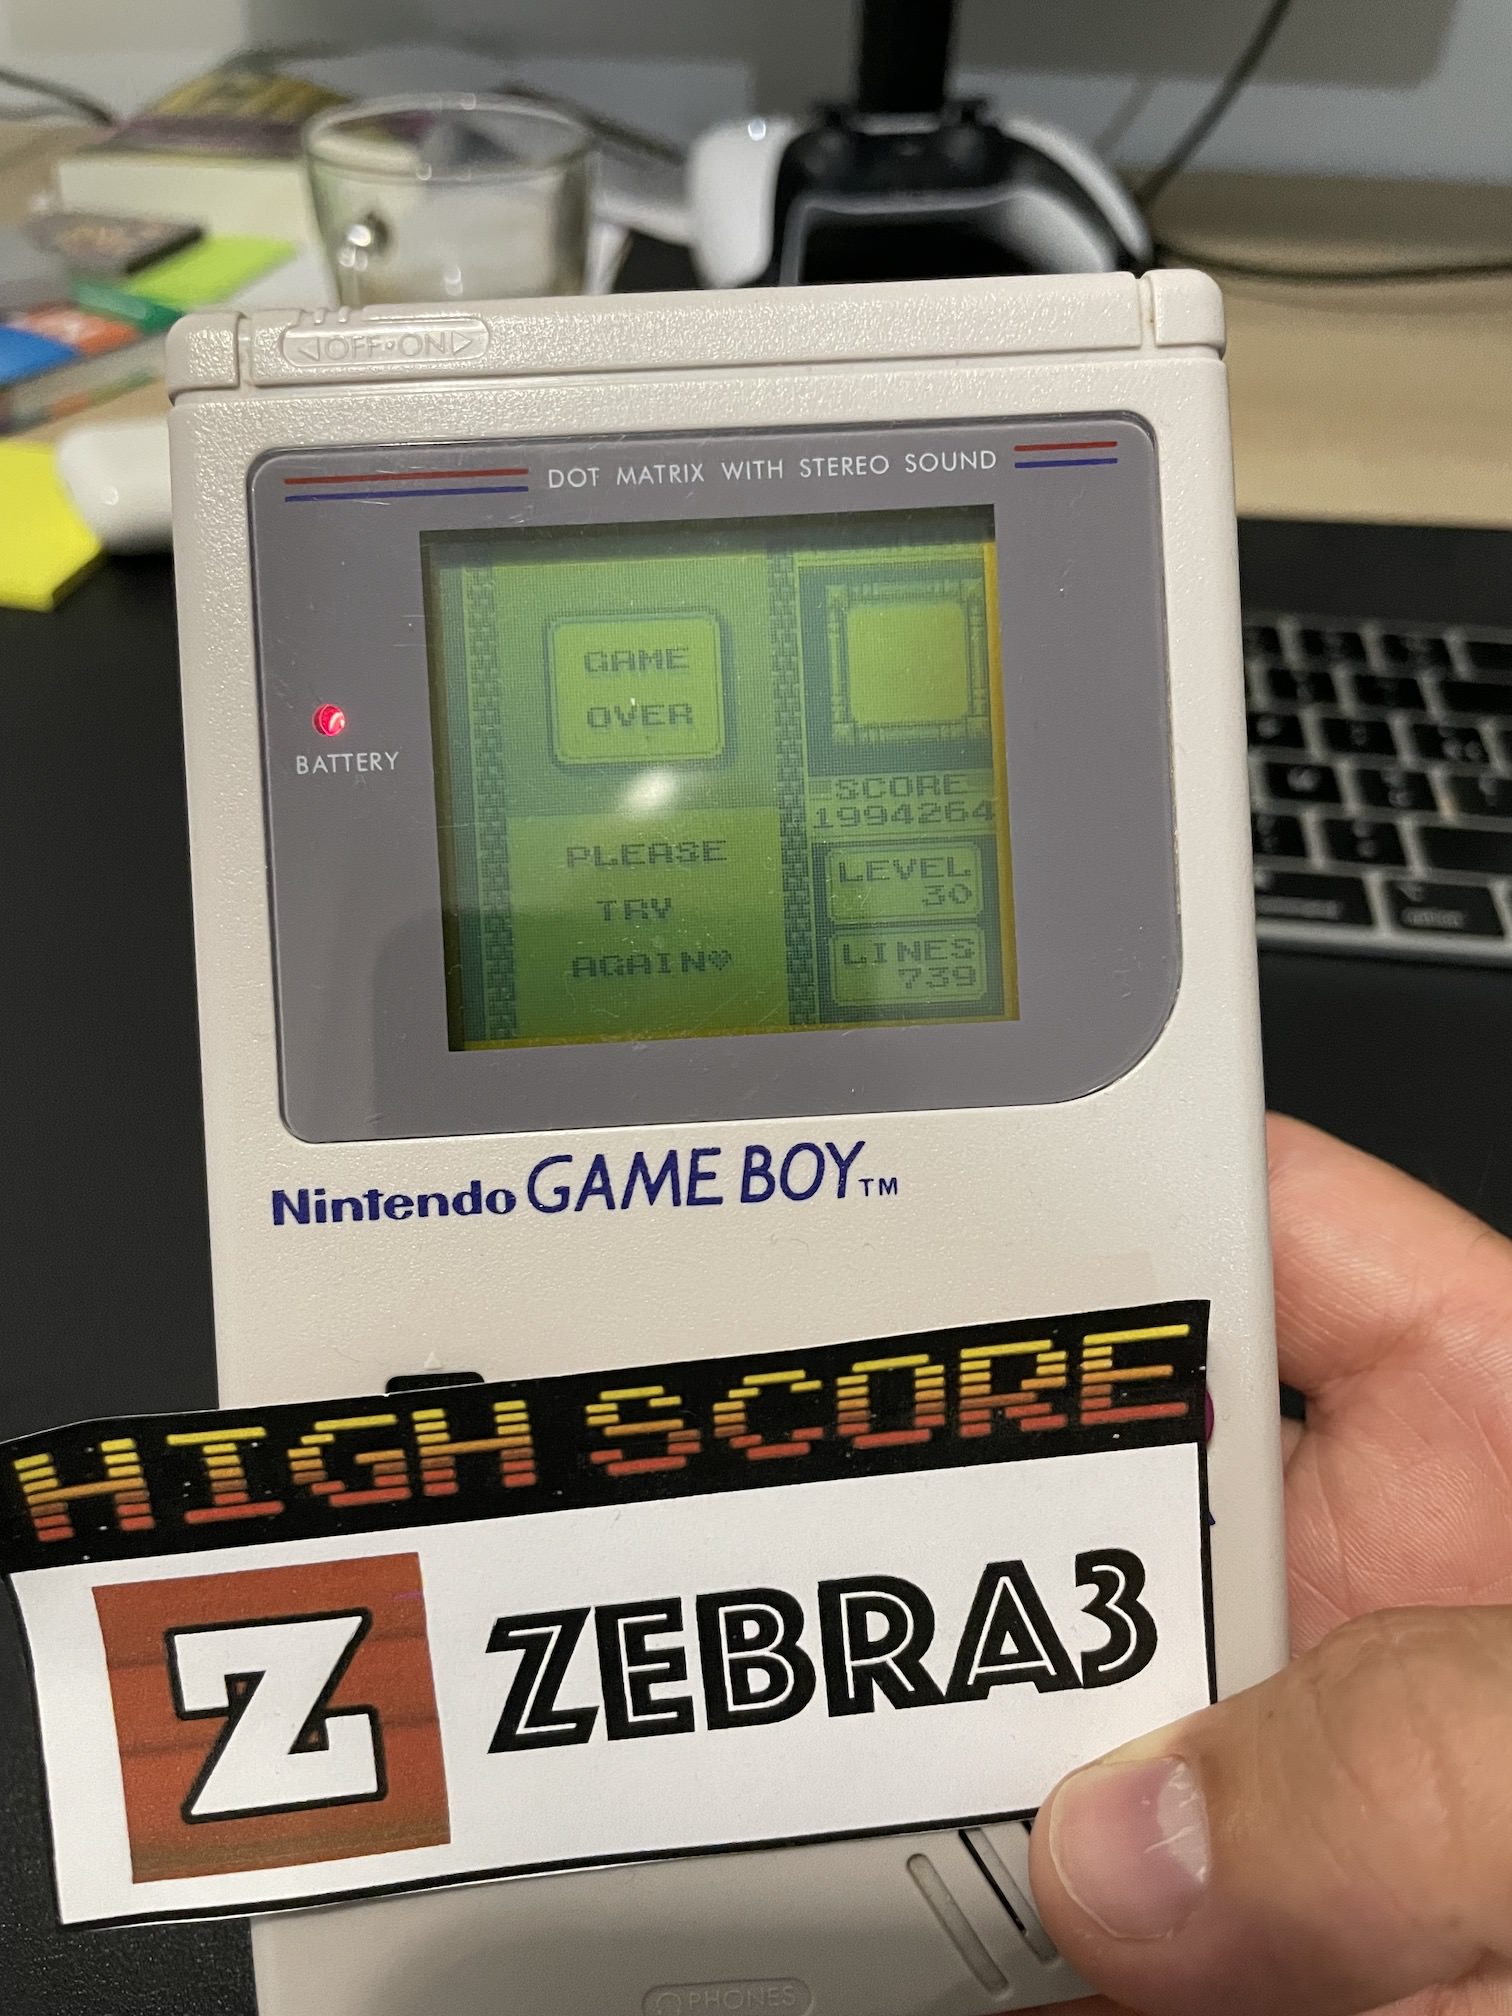 Zebra3: Tetris DX: Marathon [Lines] (Game Boy Color) 739 points on 2023-06-29 08:36:14